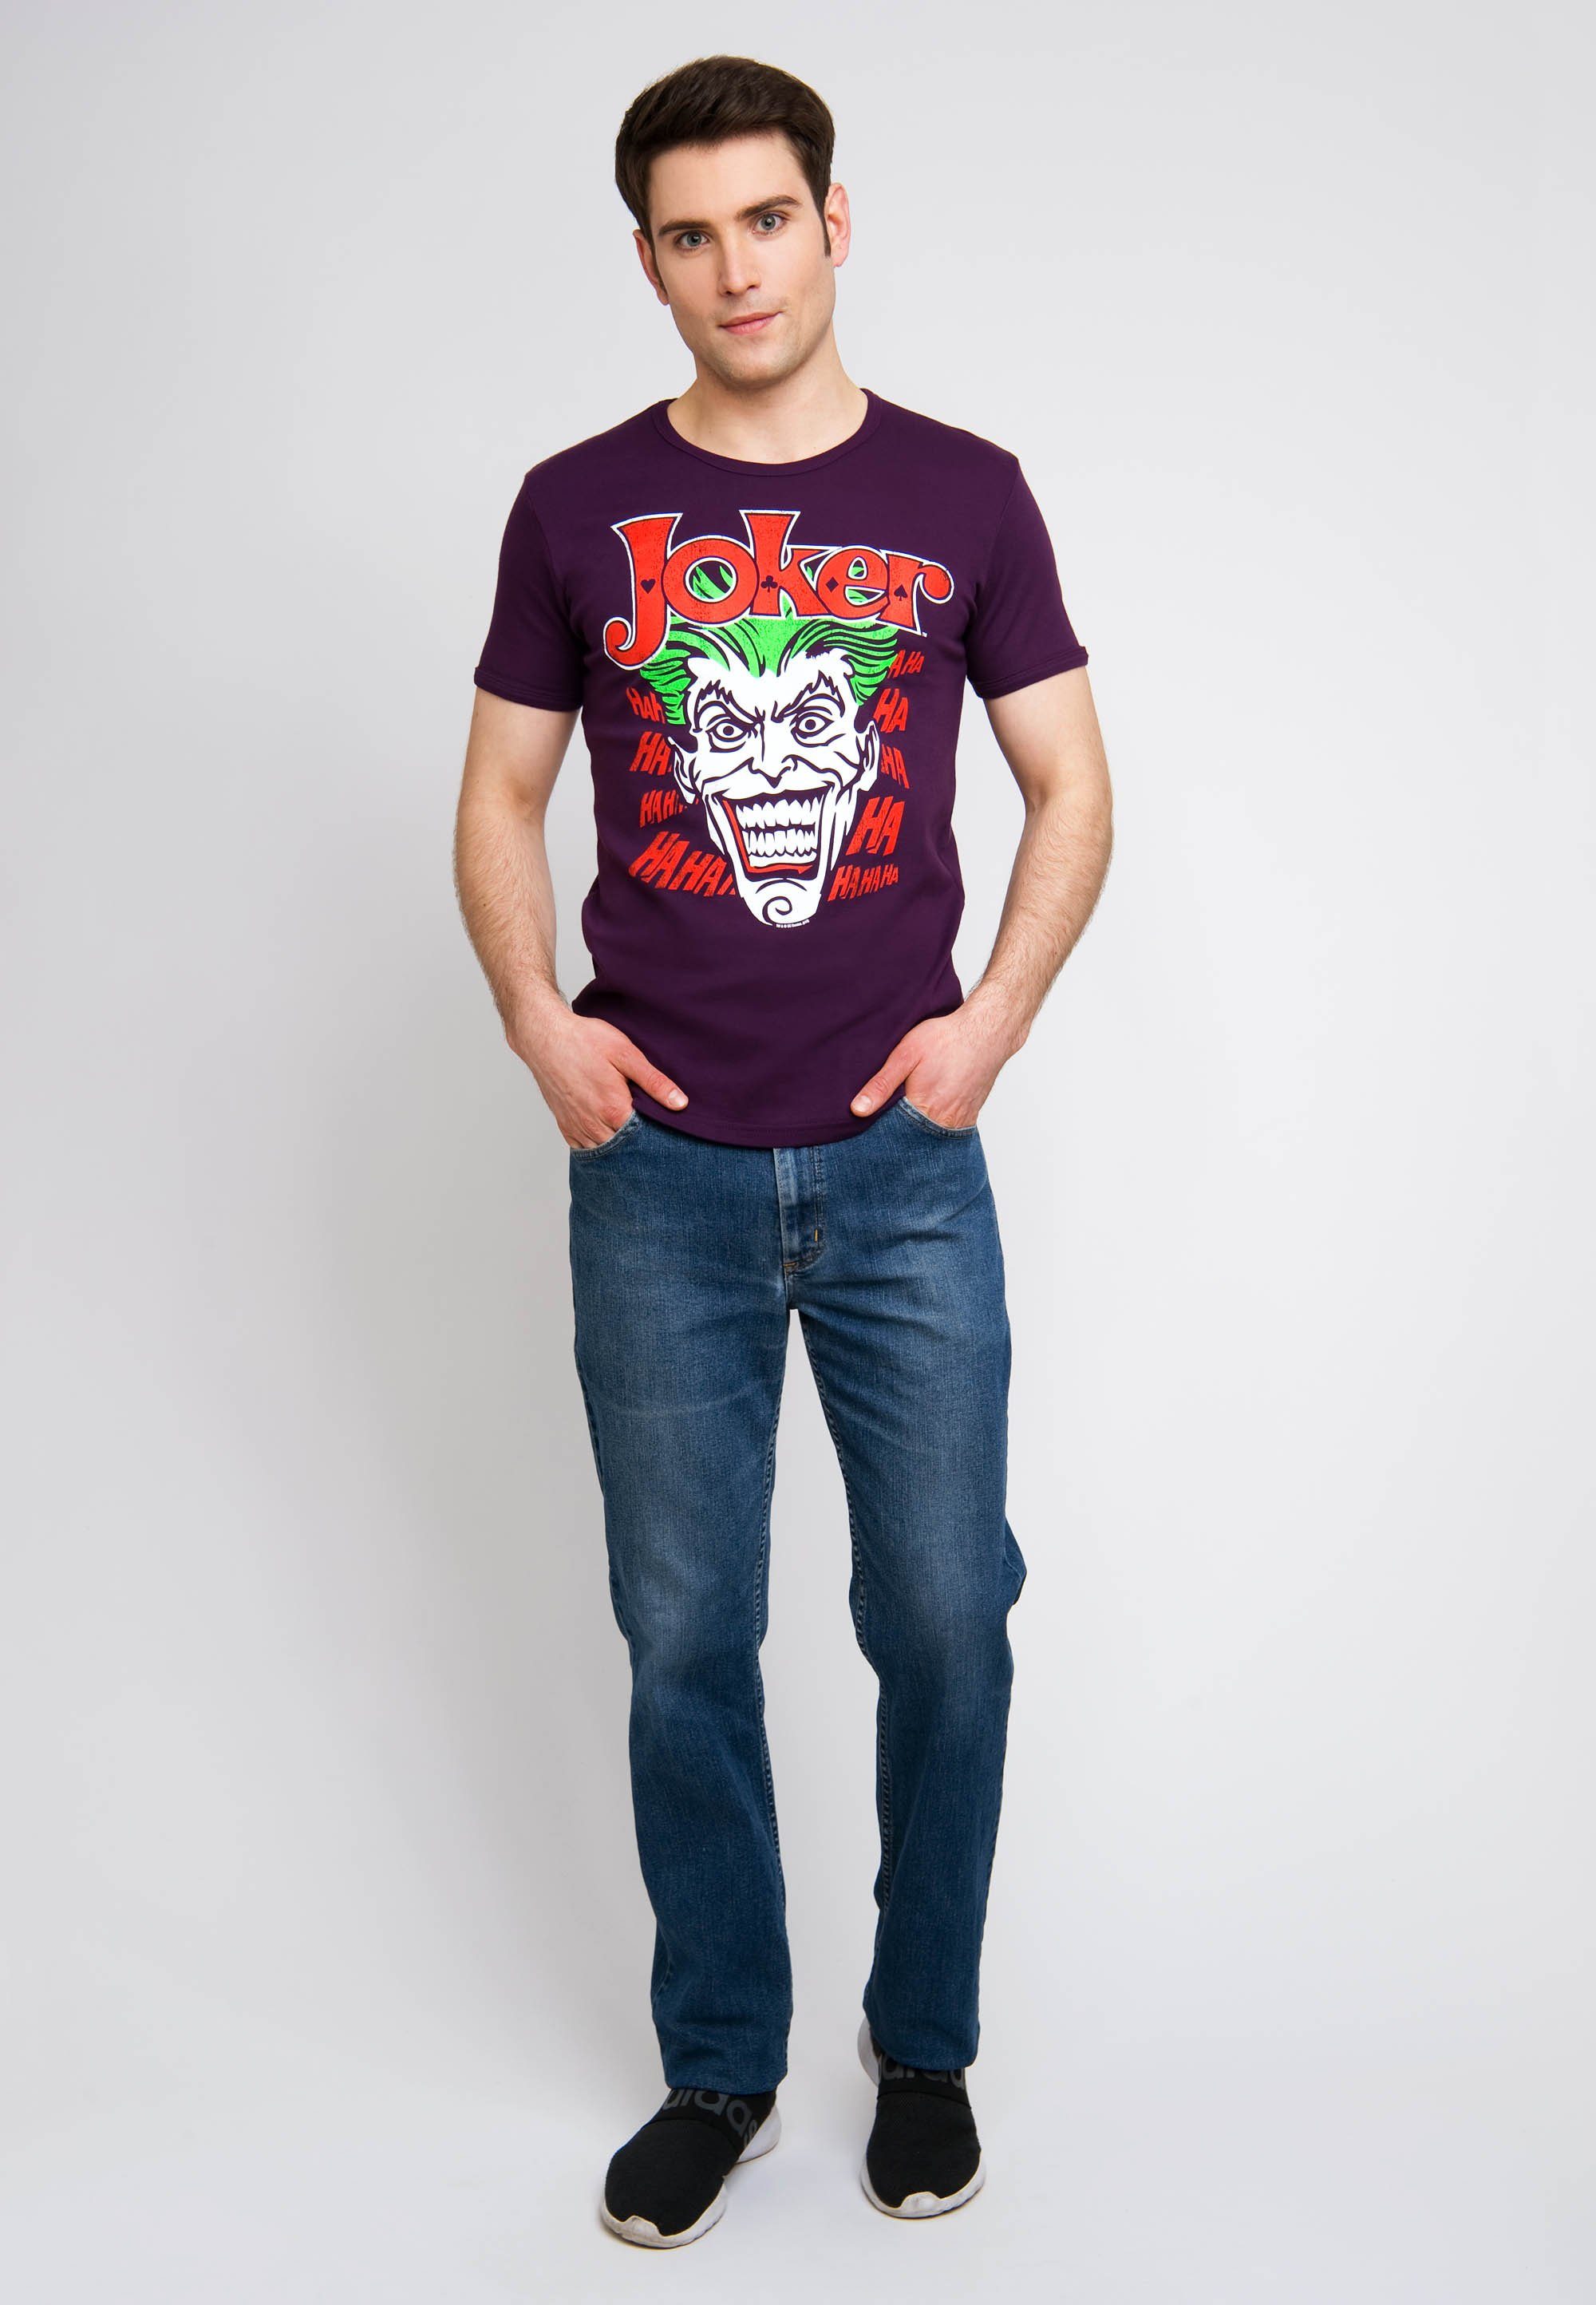 Joker-Print LOGOSHIRT Joker mit Batman T-Shirt bunt kultigem